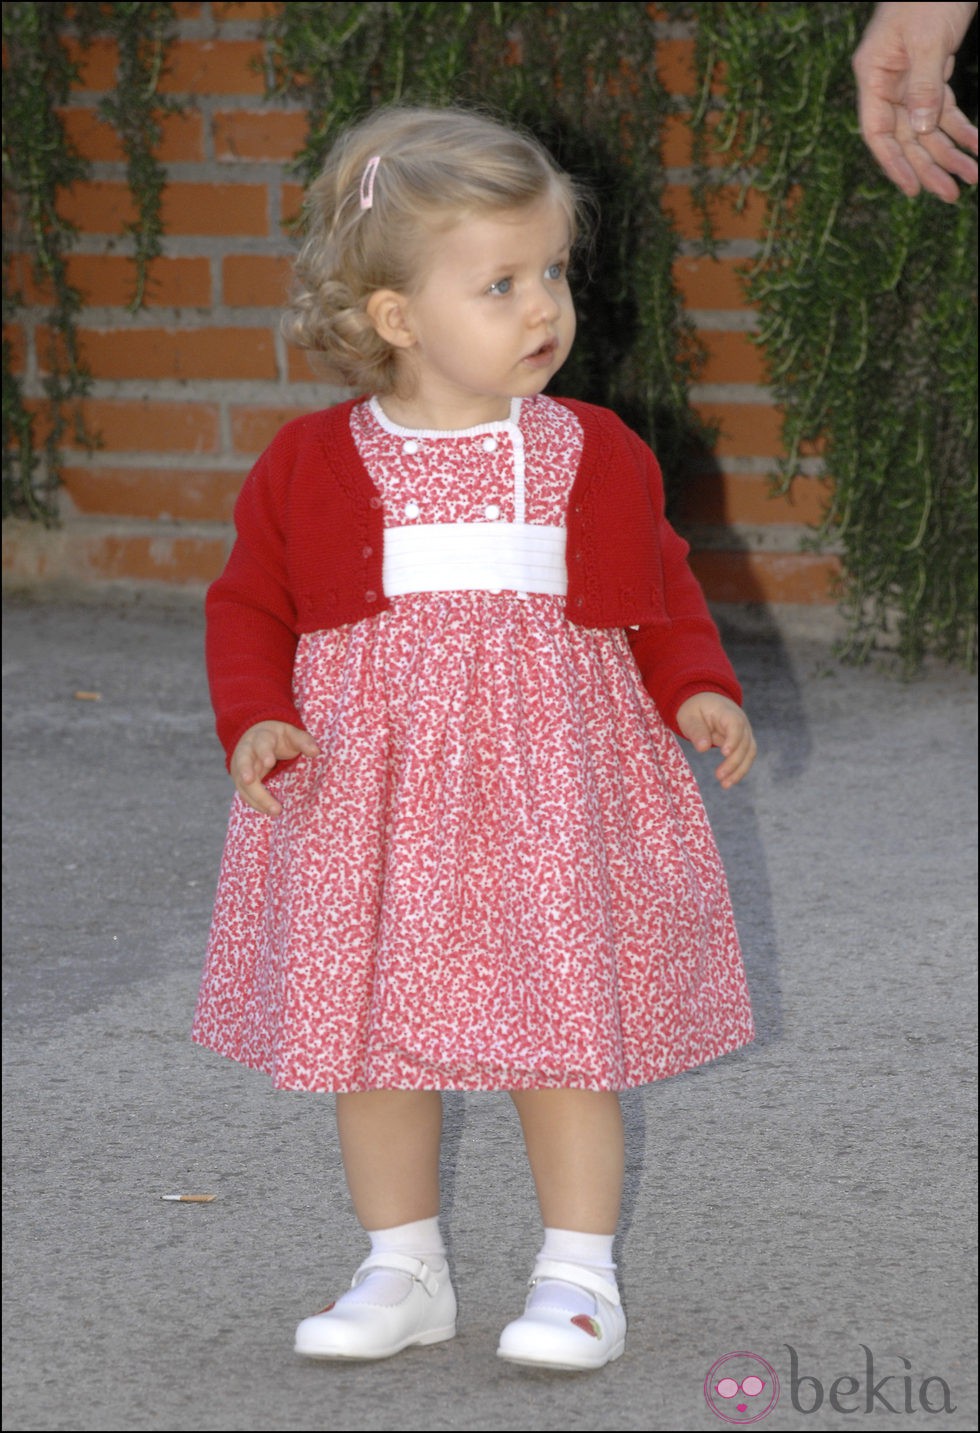 La Infanta Leonor con un vestido rojo y blanco